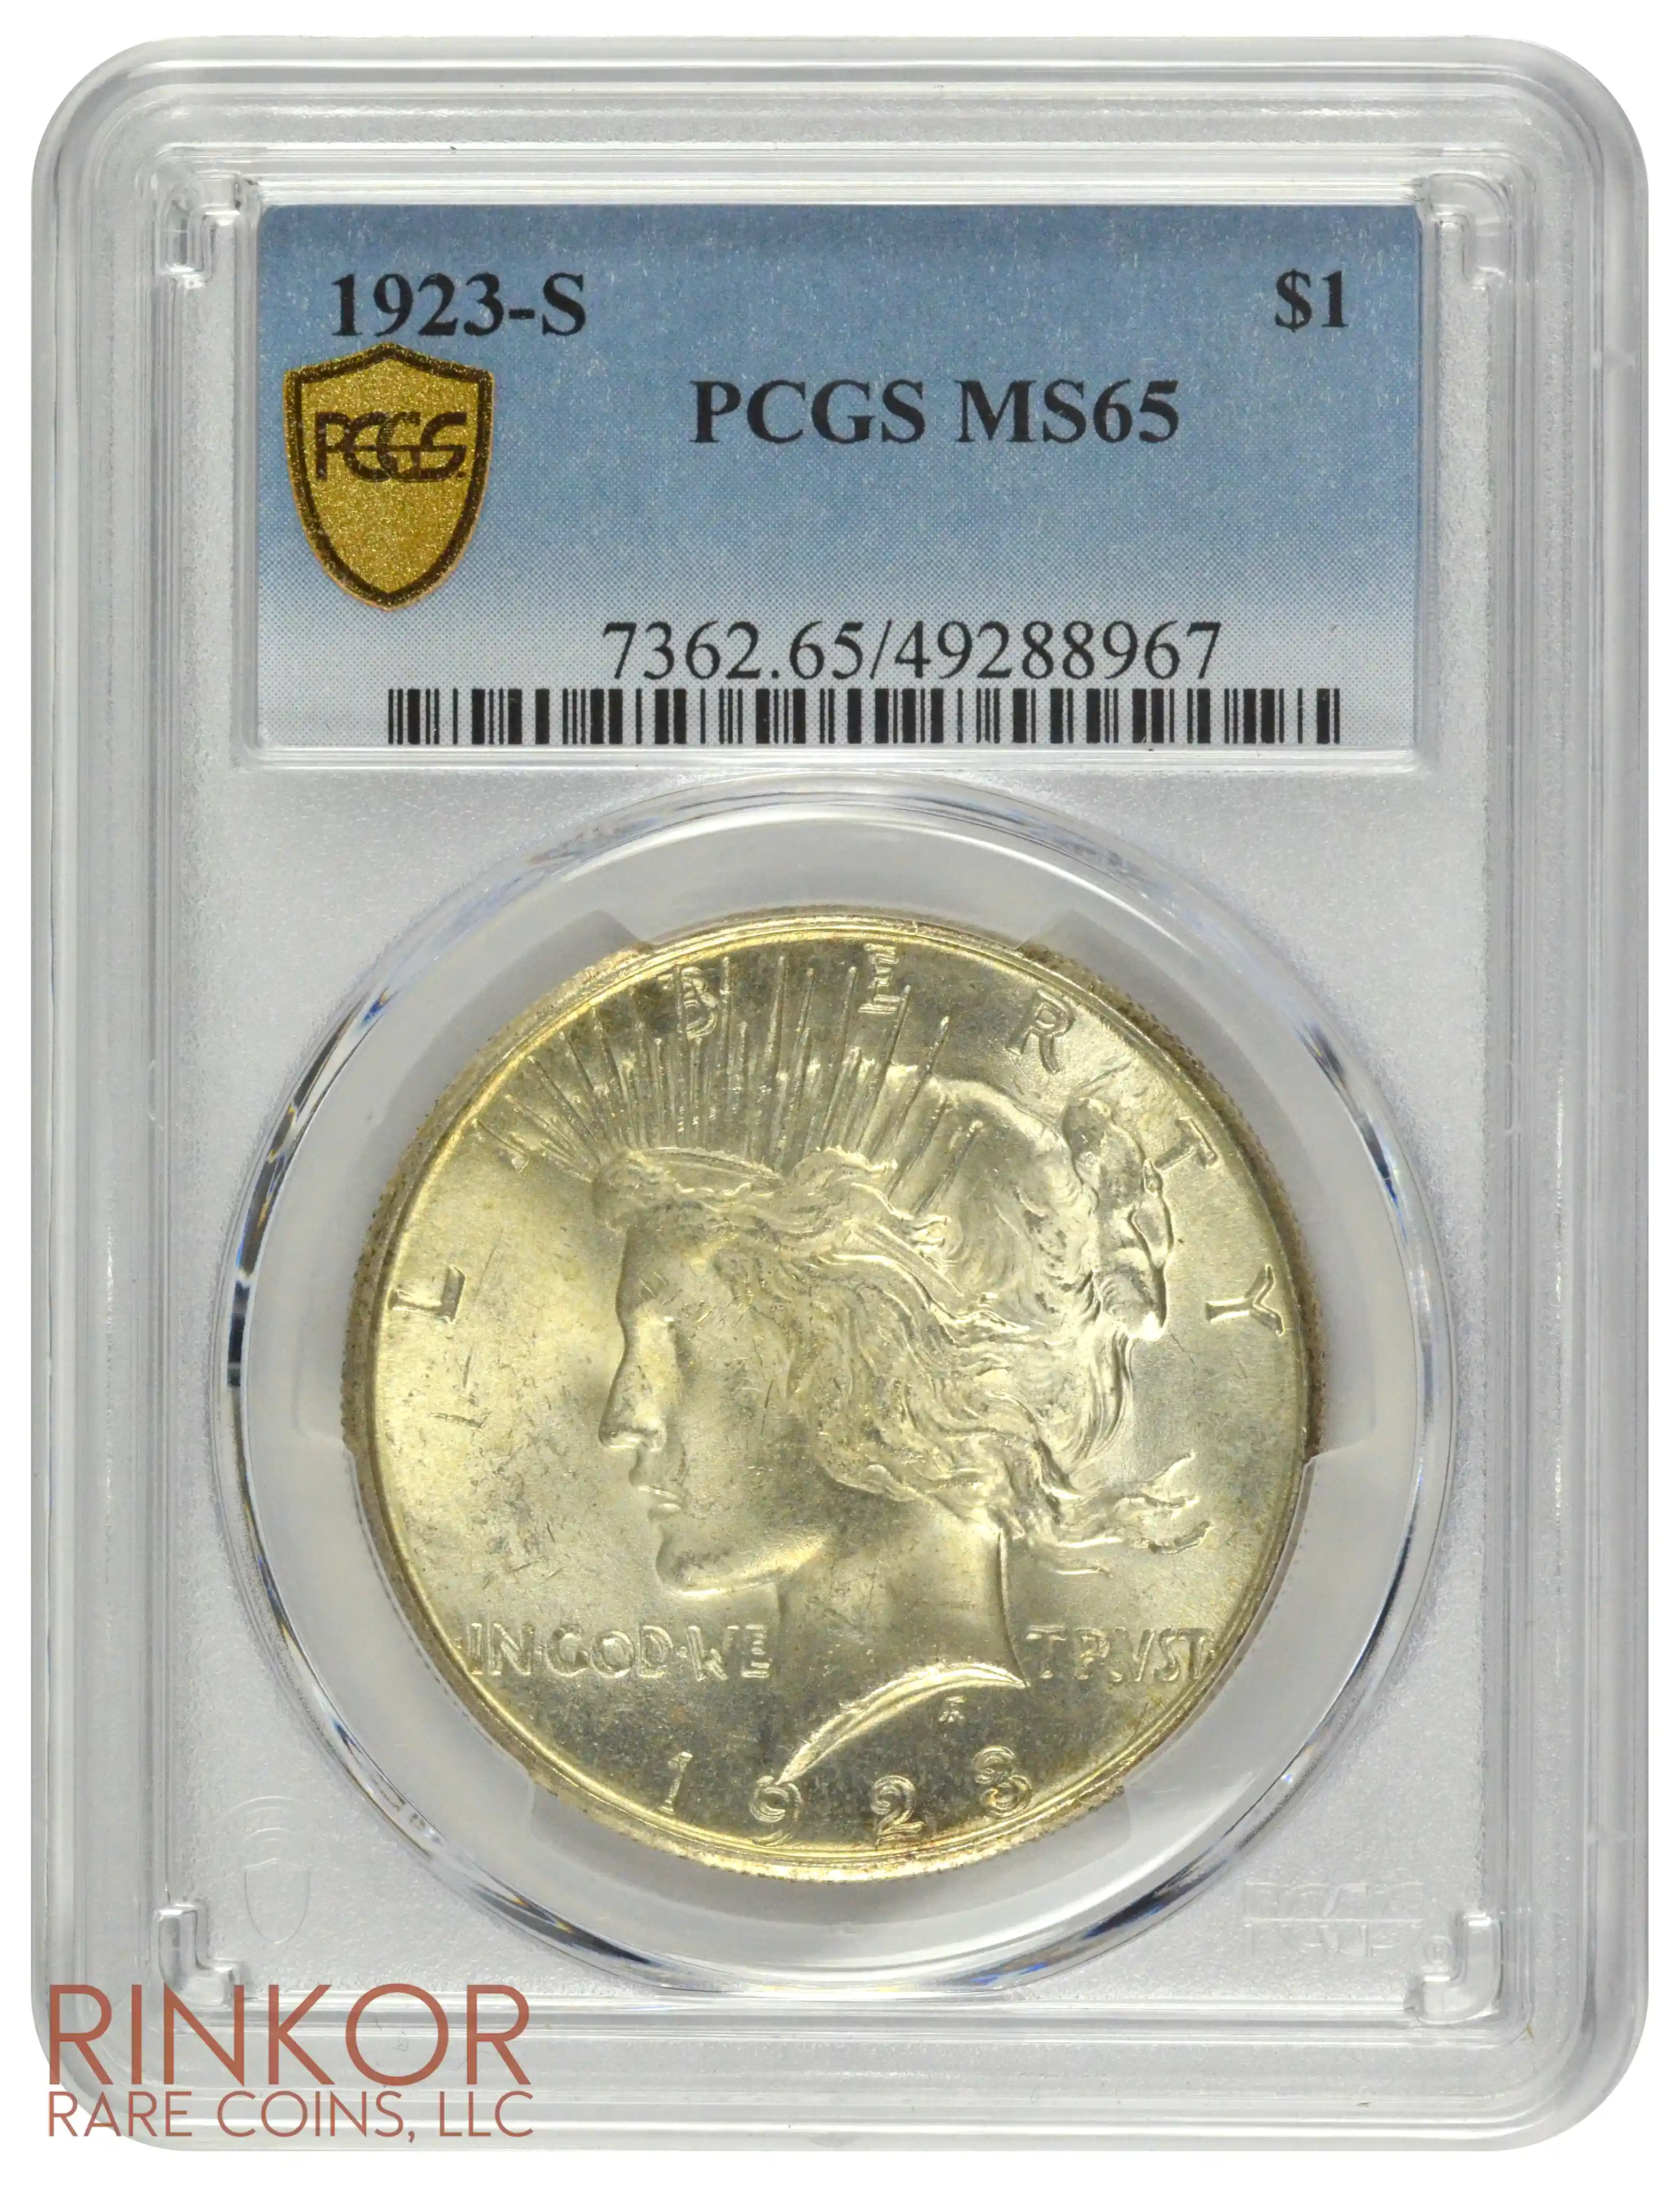 1923-S $1 PCGS MS 65